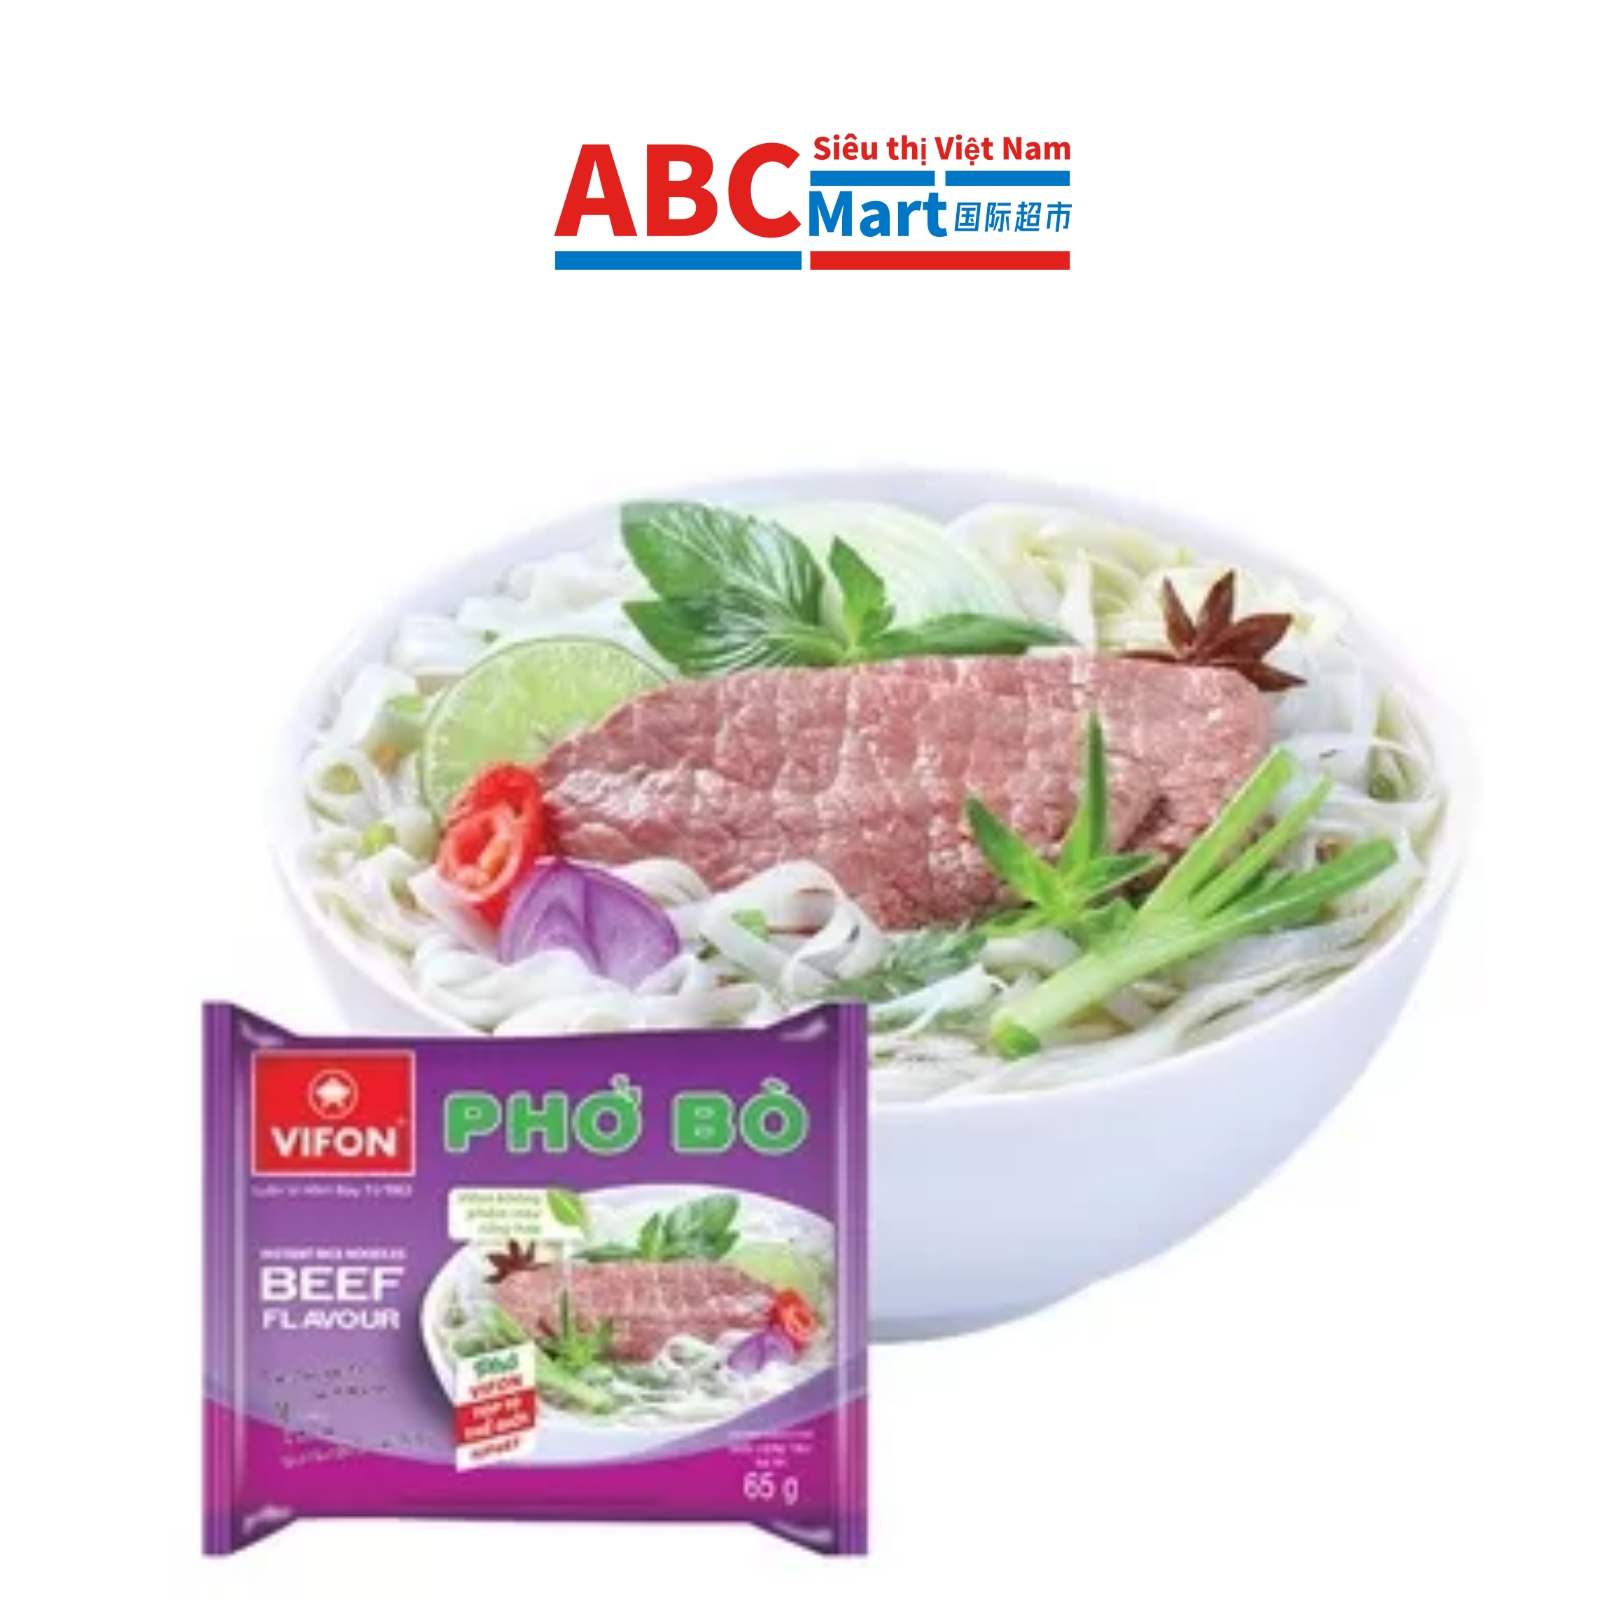 【Việt Nam-Phở bò Vifon gói 65g】牛肉河粉-ABCMart 国际超市